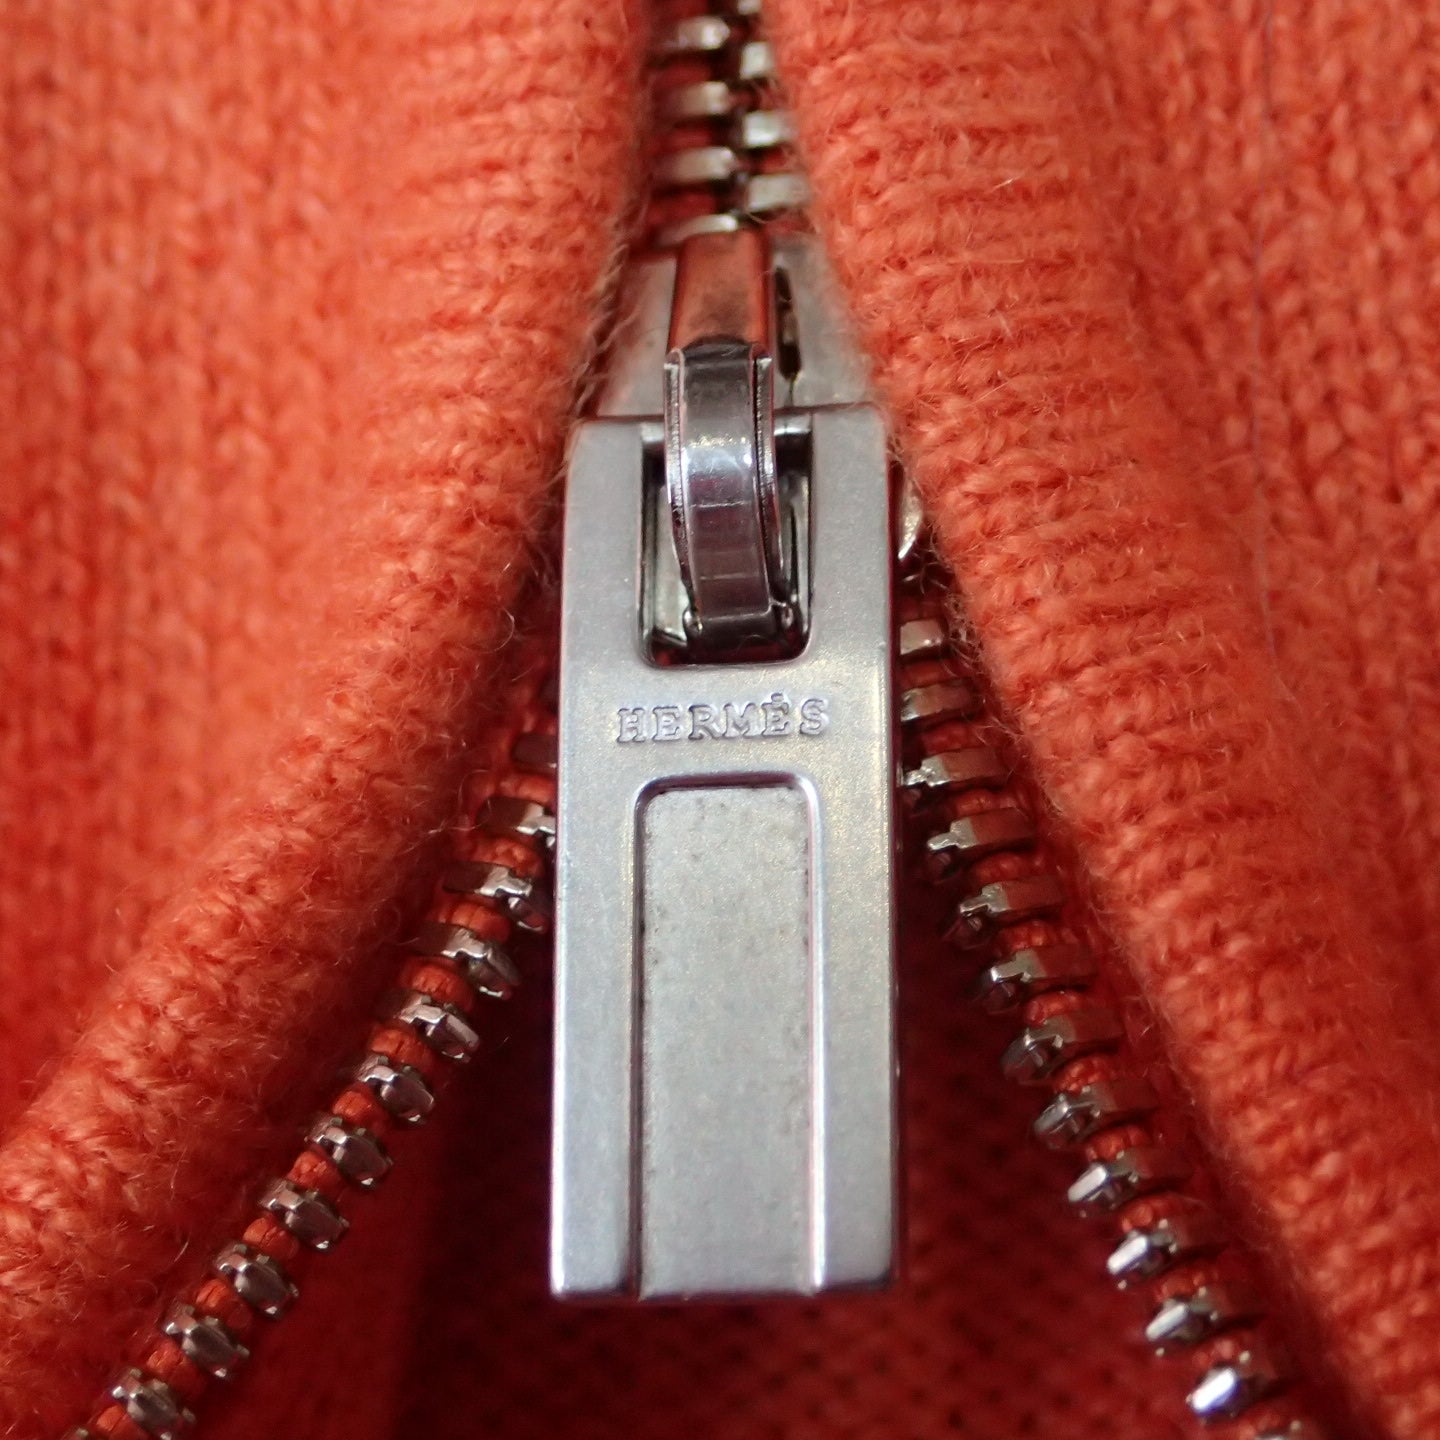 Hermes Cashmere Orange Knit